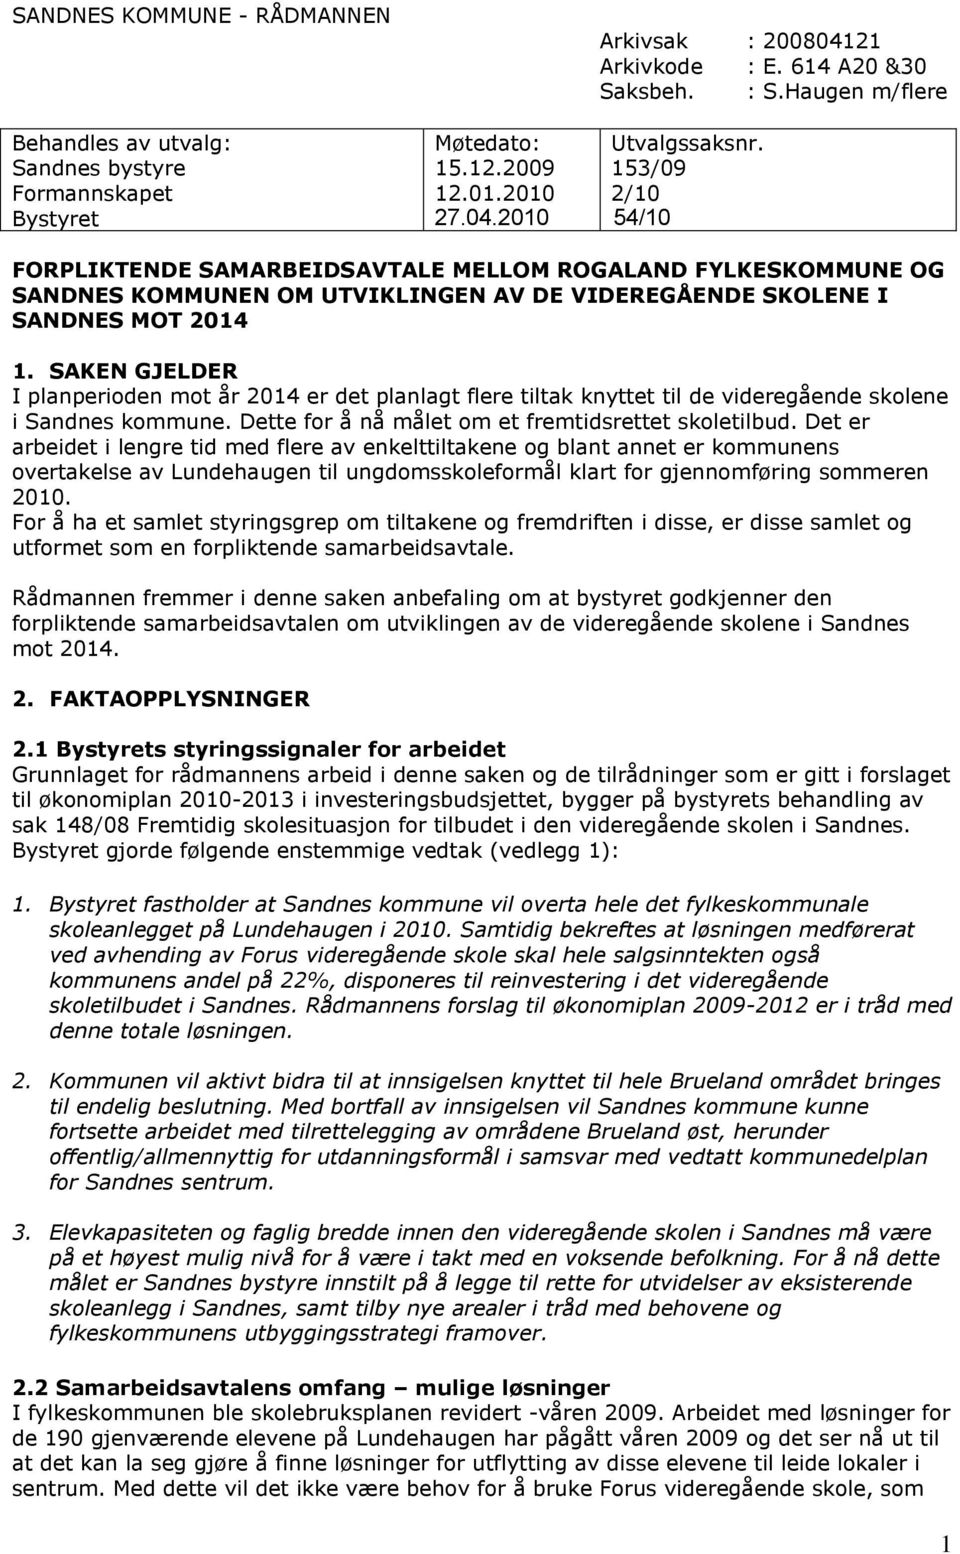 SAKEN GJELDER I planperioden mot år 2014 er det planlagt flere tiltak knyttet til de videregående skolene i Sandnes kommune. Dette for å nå målet om et fremtidsrettet skoletilbud.